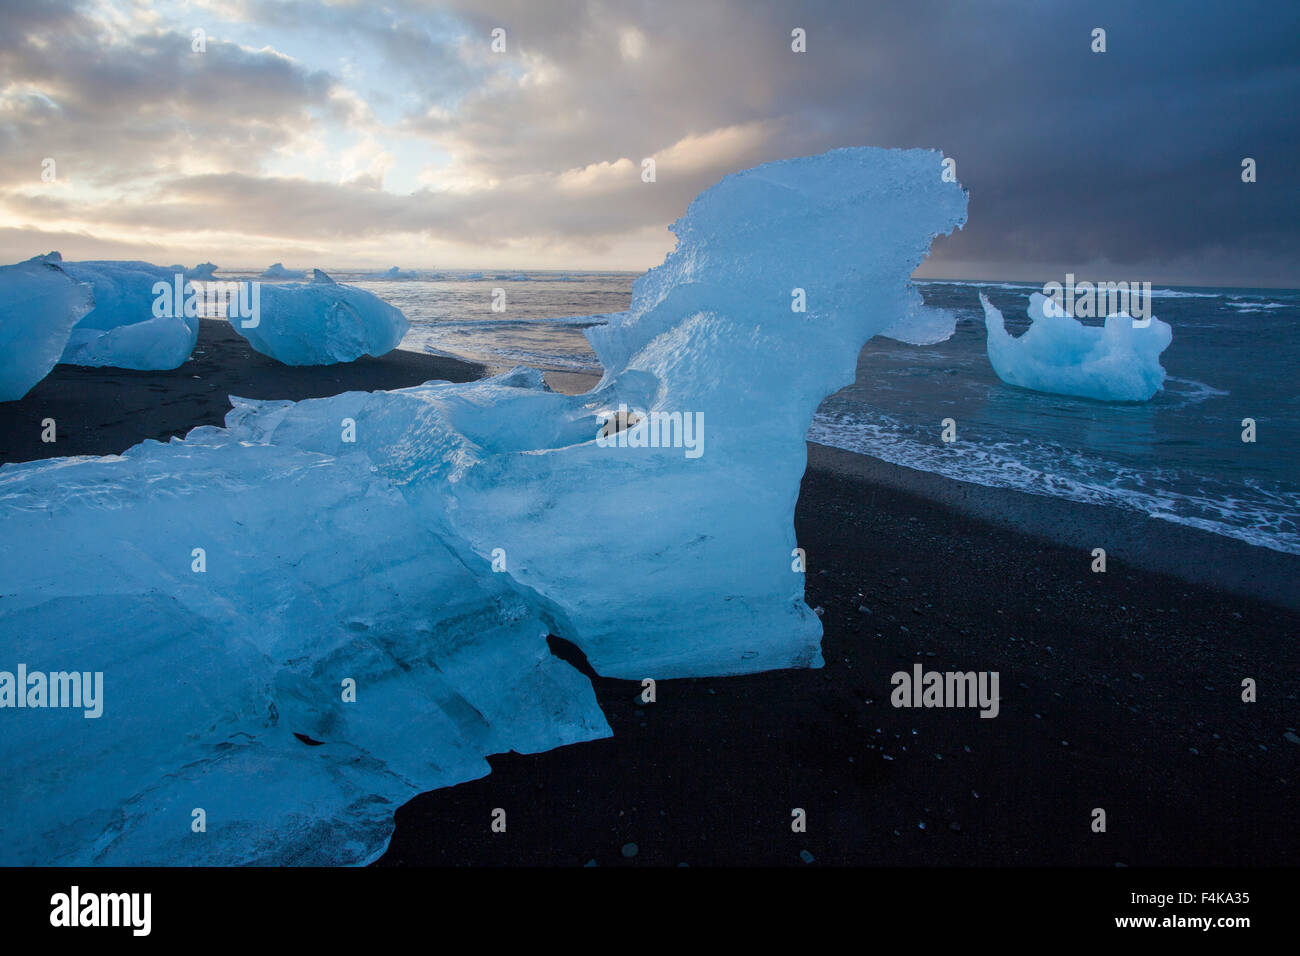 Les icebergs sur la plage de sable noir en dessous, Sudhurland, Islande. Banque D'Images